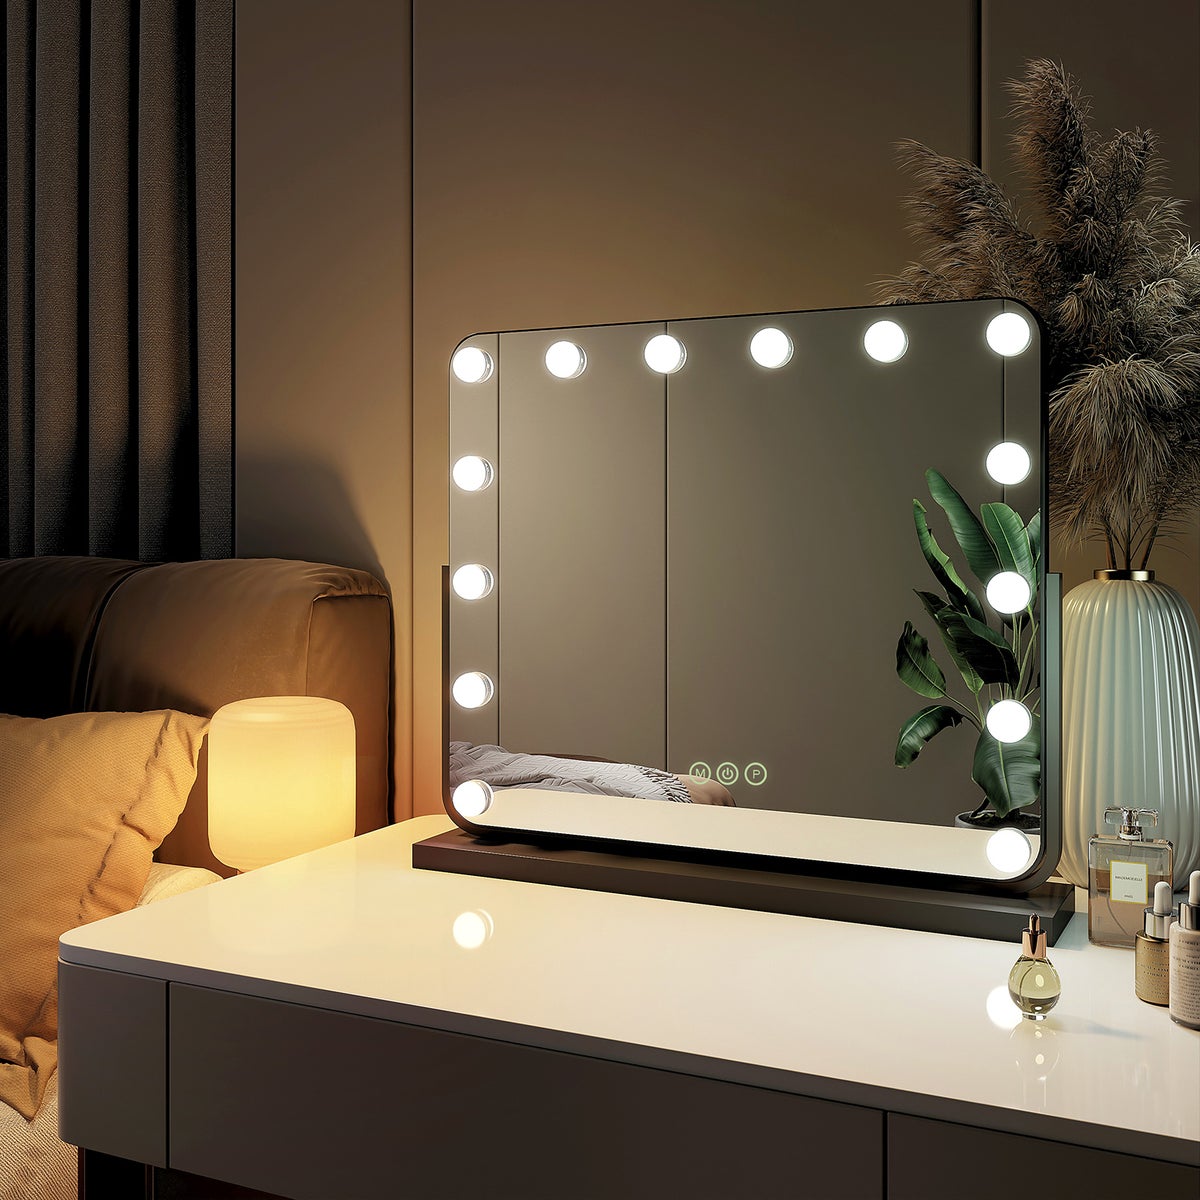 EMKE Kosmetikspiegel Hollywood Spiegel mit Beleuchtung 360 ° Drehbar Tischspiegel 3 Farbe Licht,14 Dimmbaren LED-Leuchtmitteln,Speicherfunktion,7 x Vergrößerungsspiegel,Schwarz,60 x 52 cm